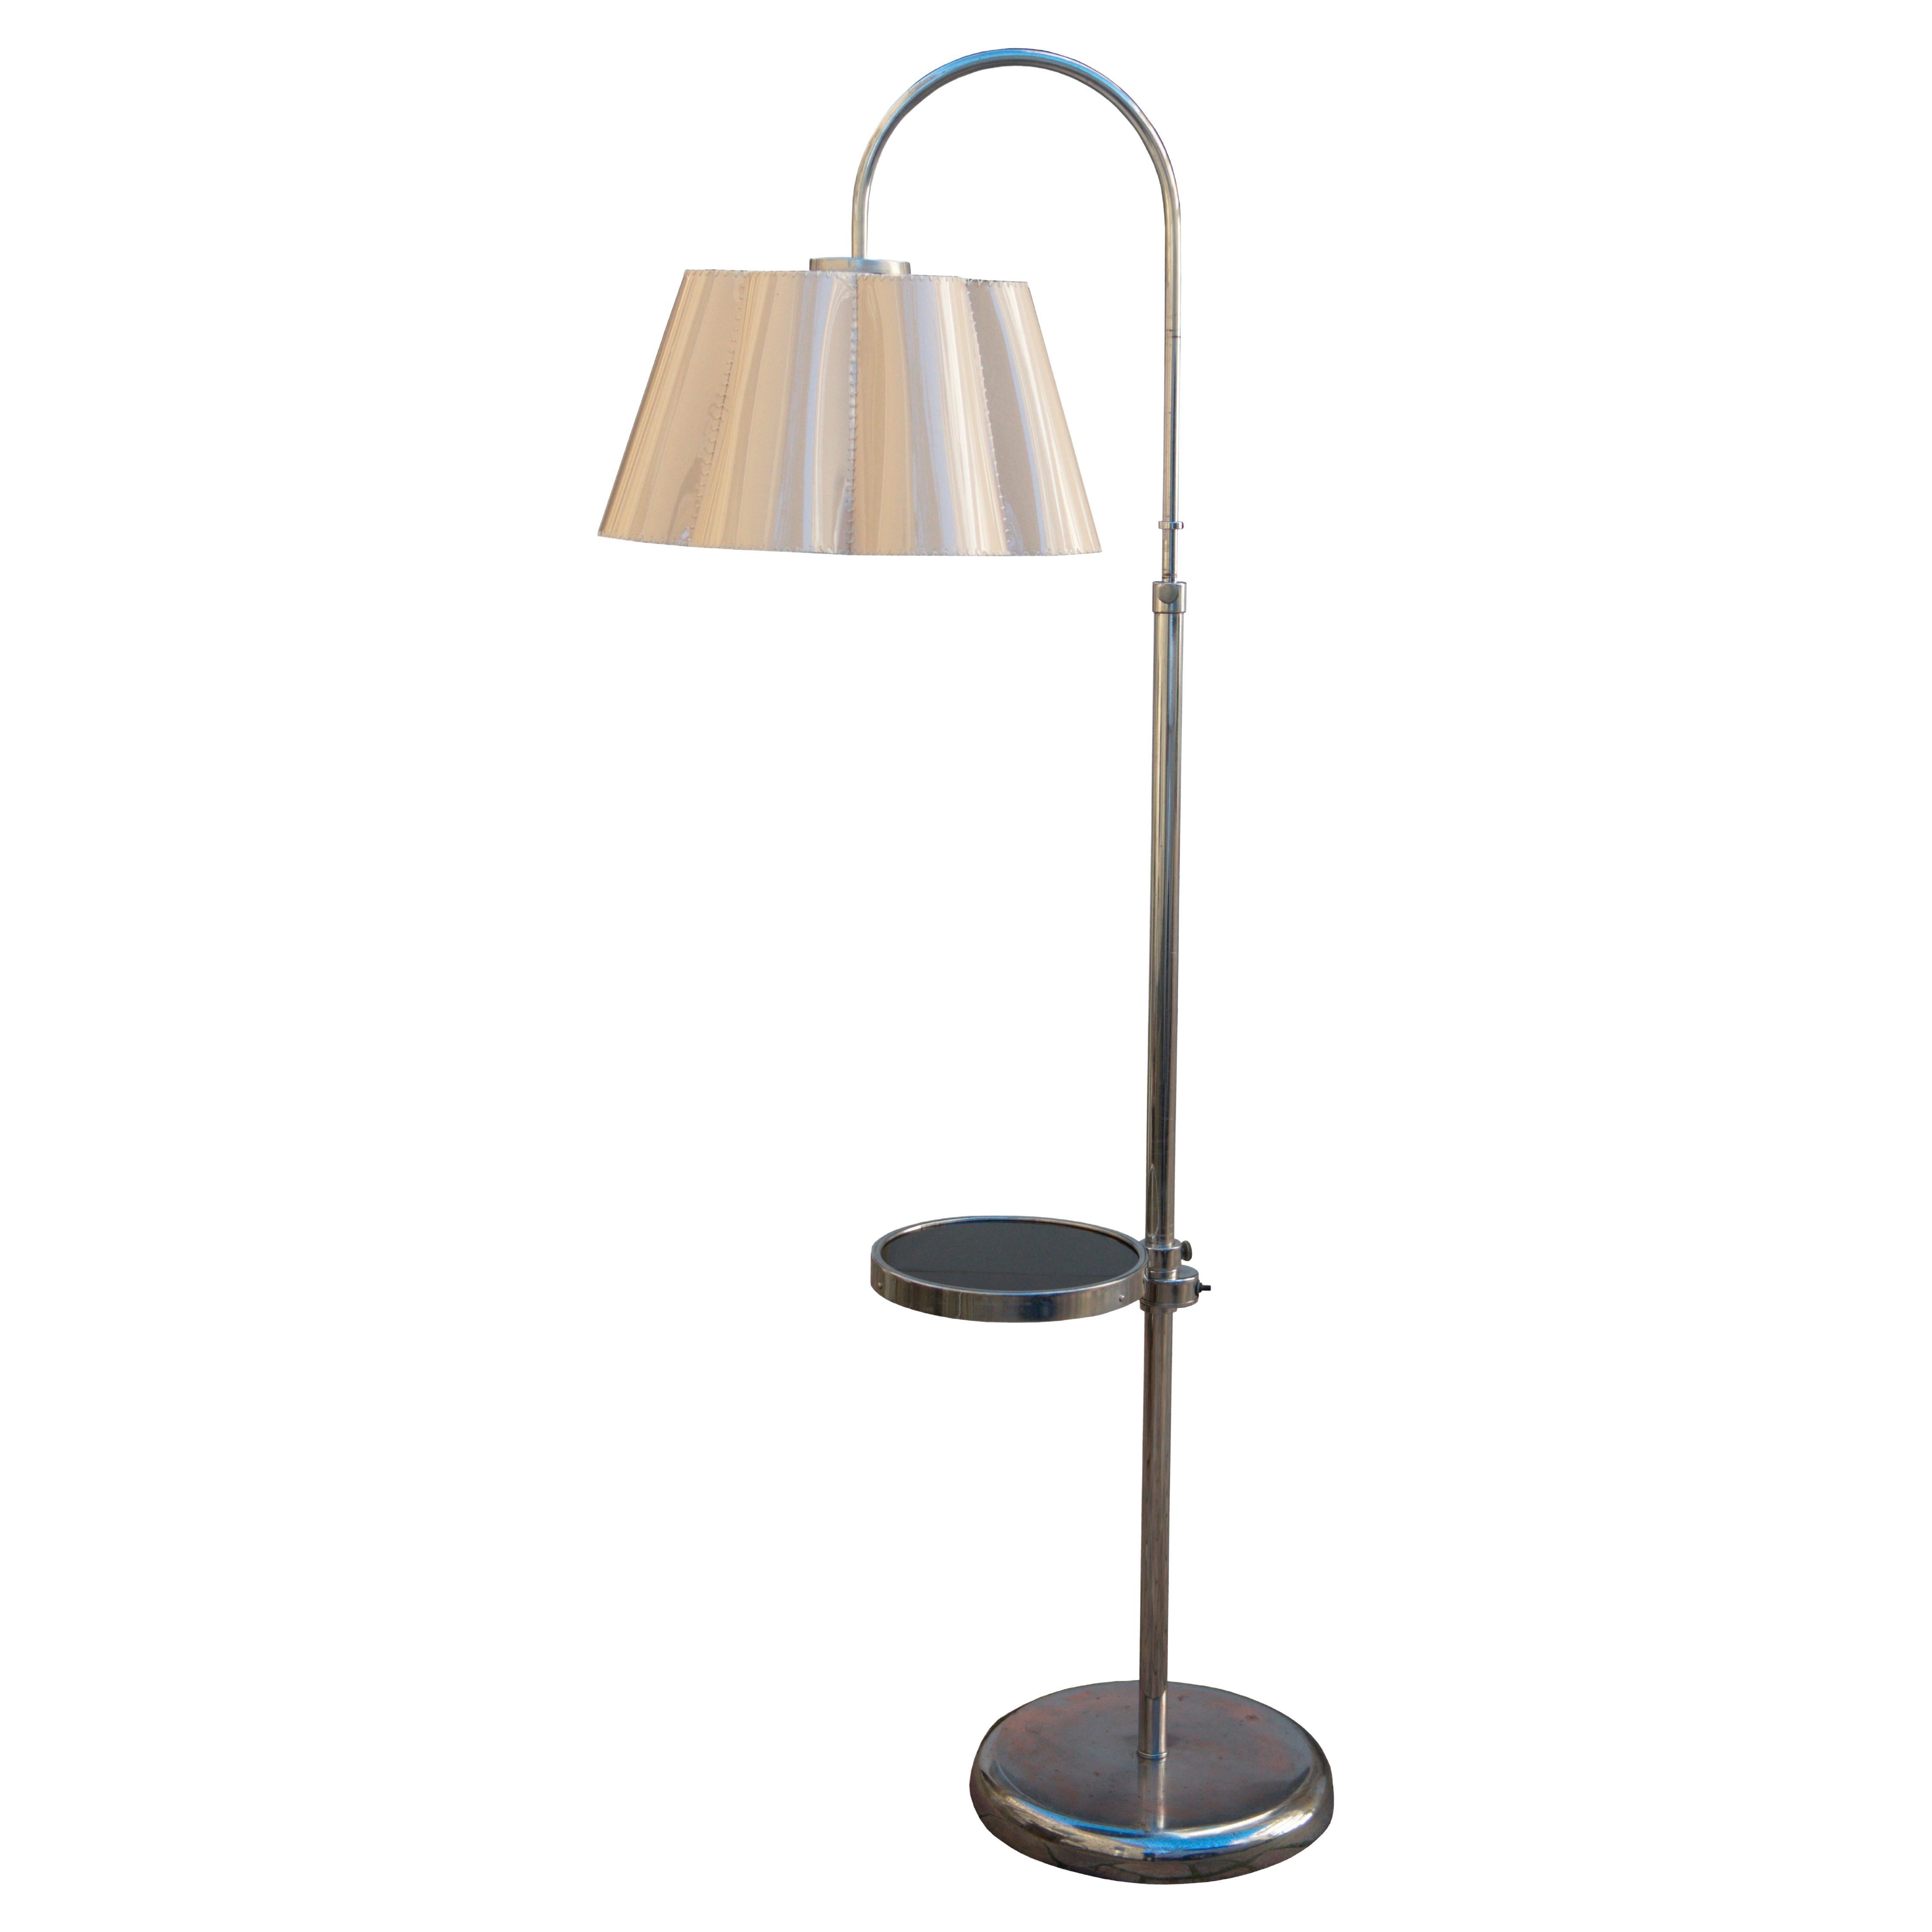 1930's Modernist Floor Lamp For Sale